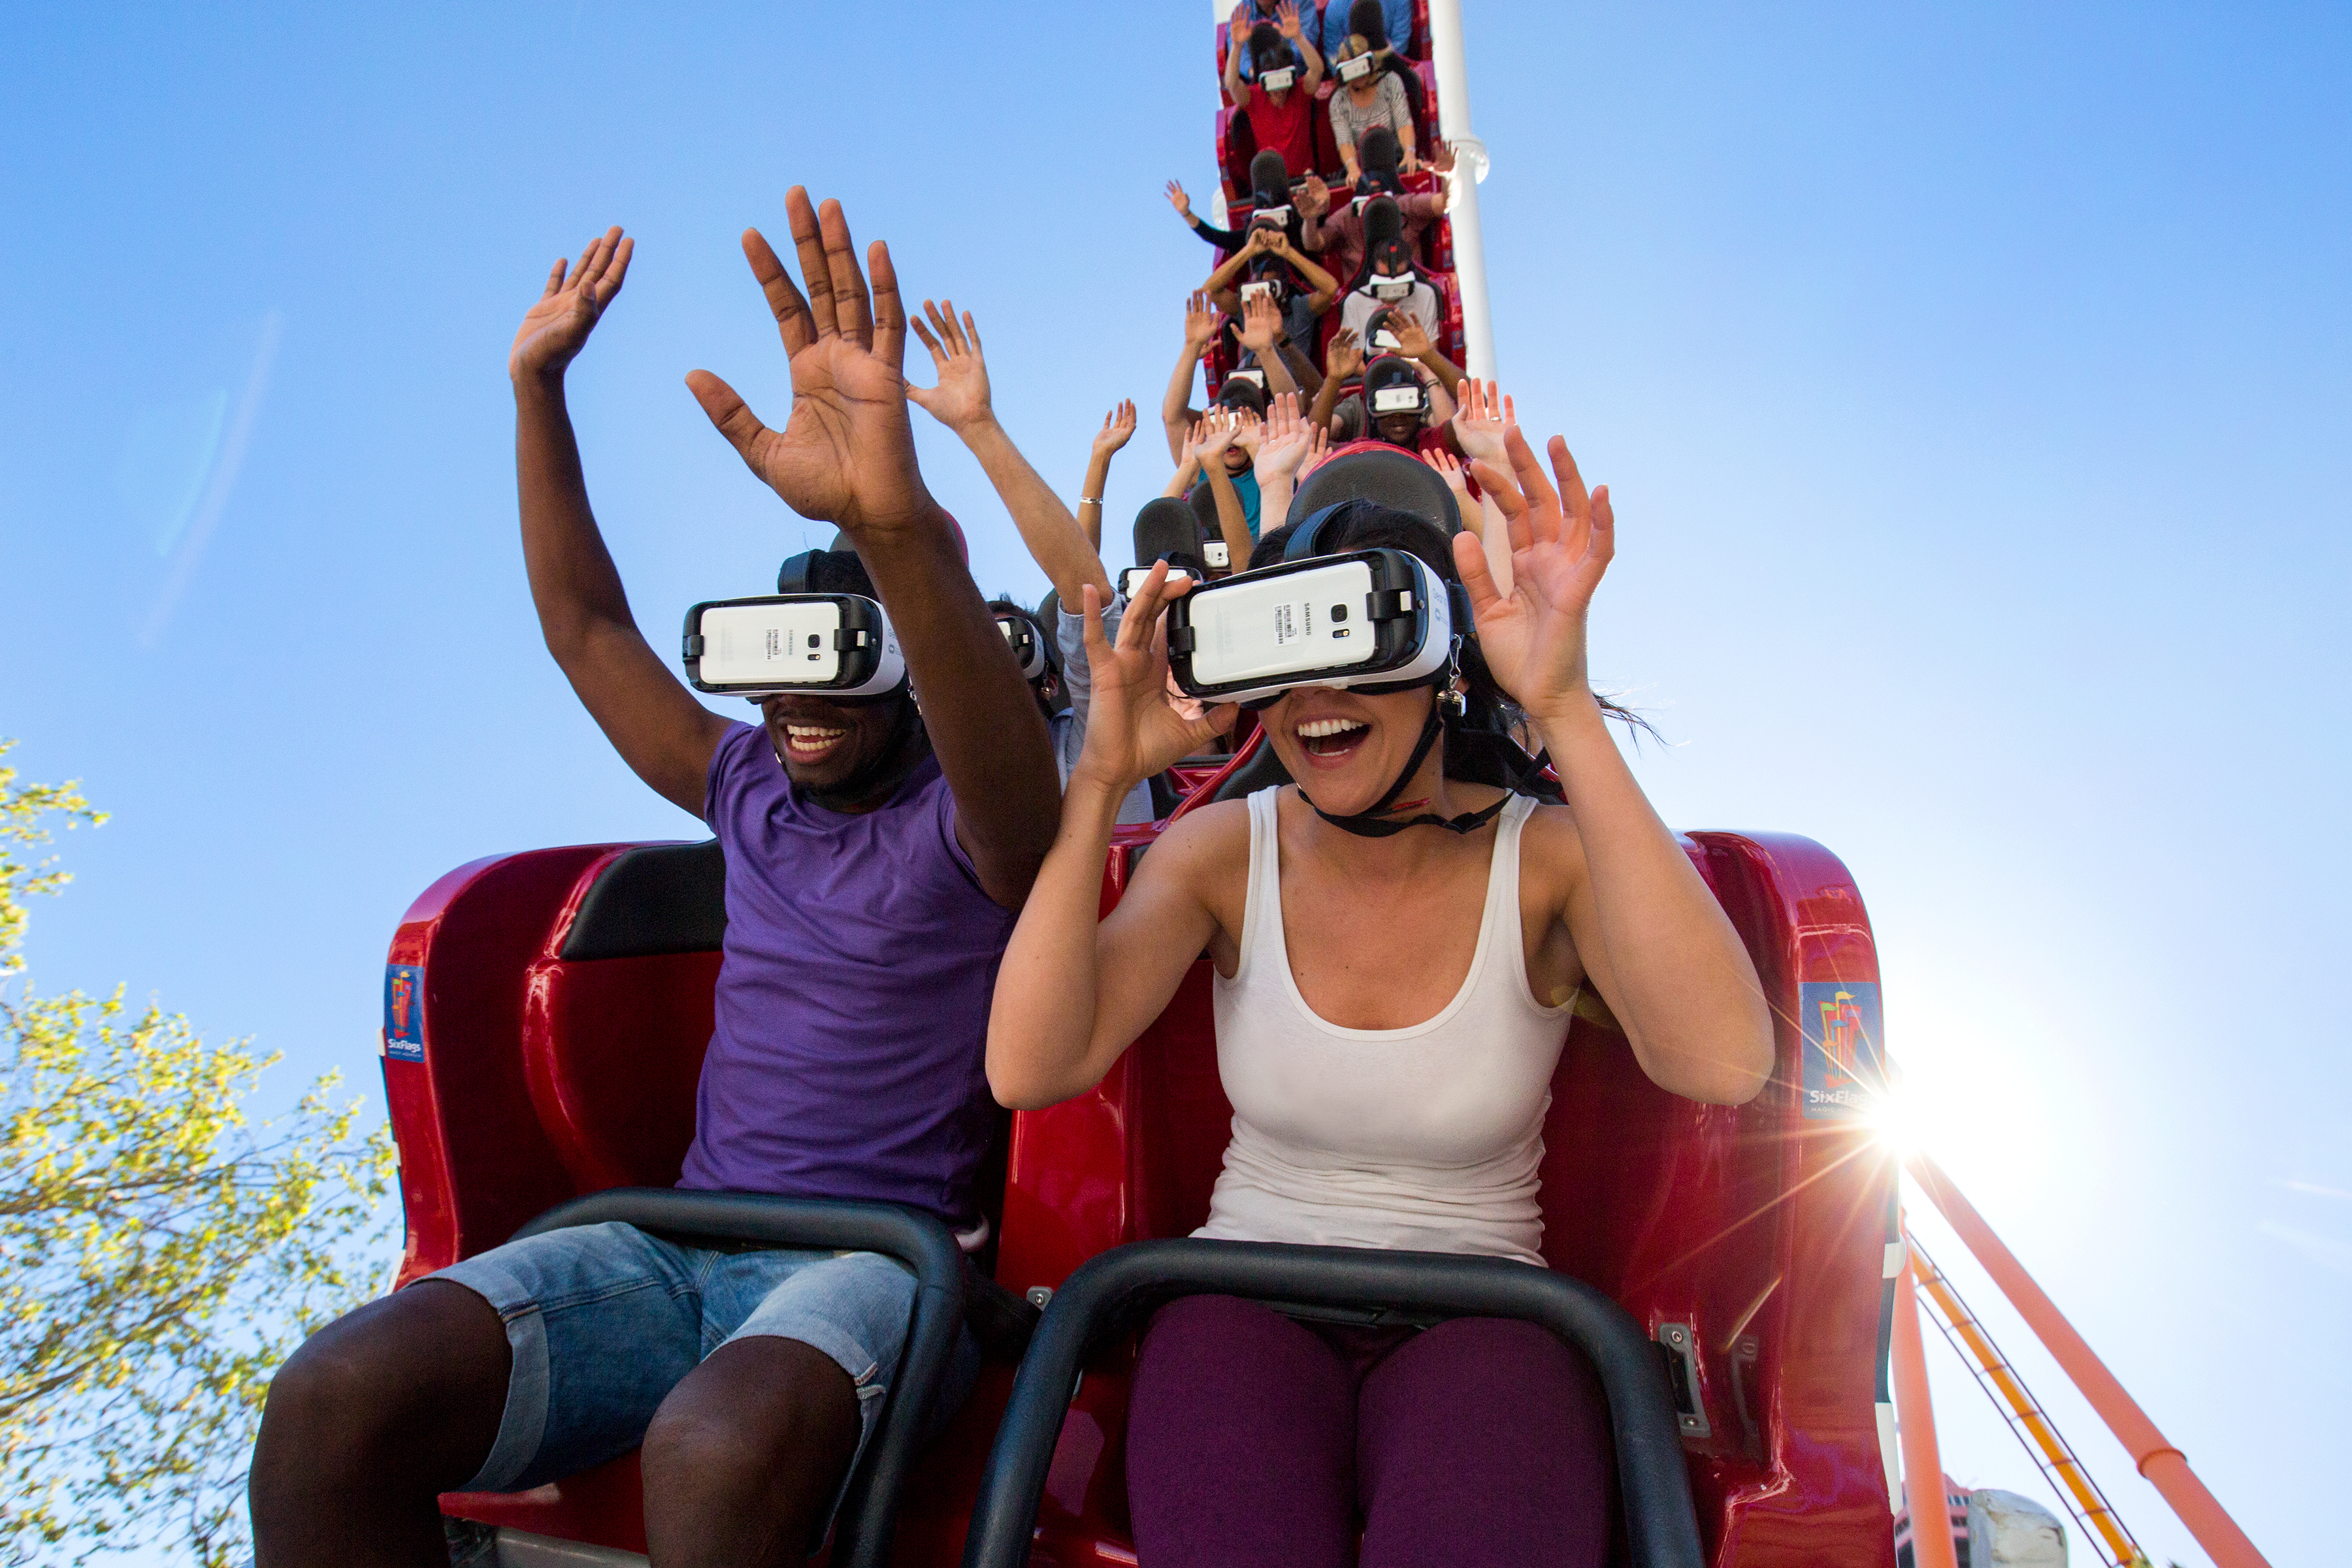 Vr long. Американские горки виар. Американские горки VR. Виртуальная реальность горки. Аттракцион виртуальной реальности.